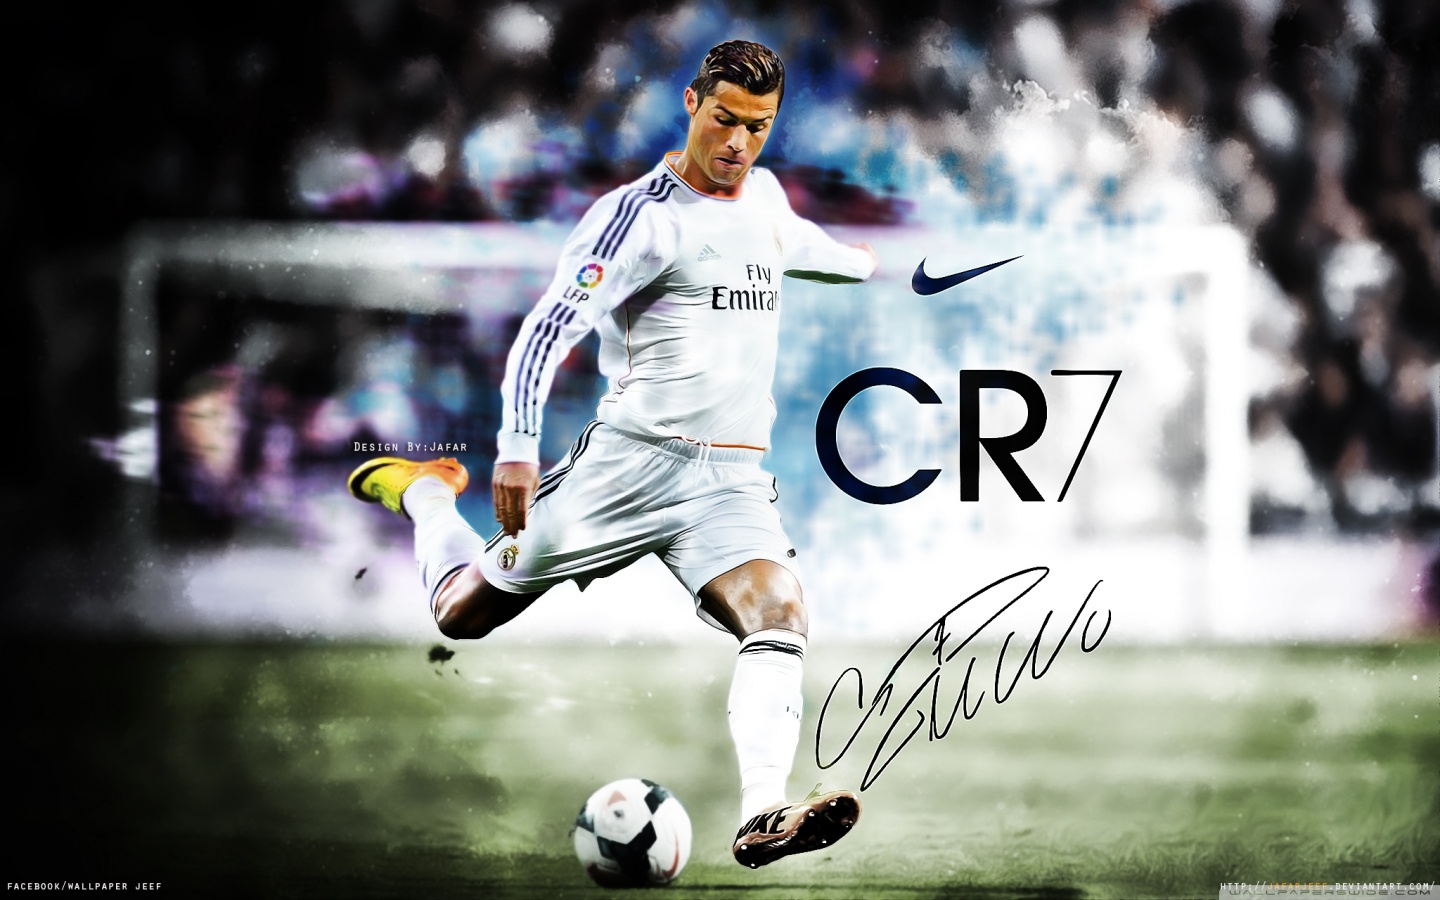 Cristiano Ronaldo Wallpaper Video Search Engine At